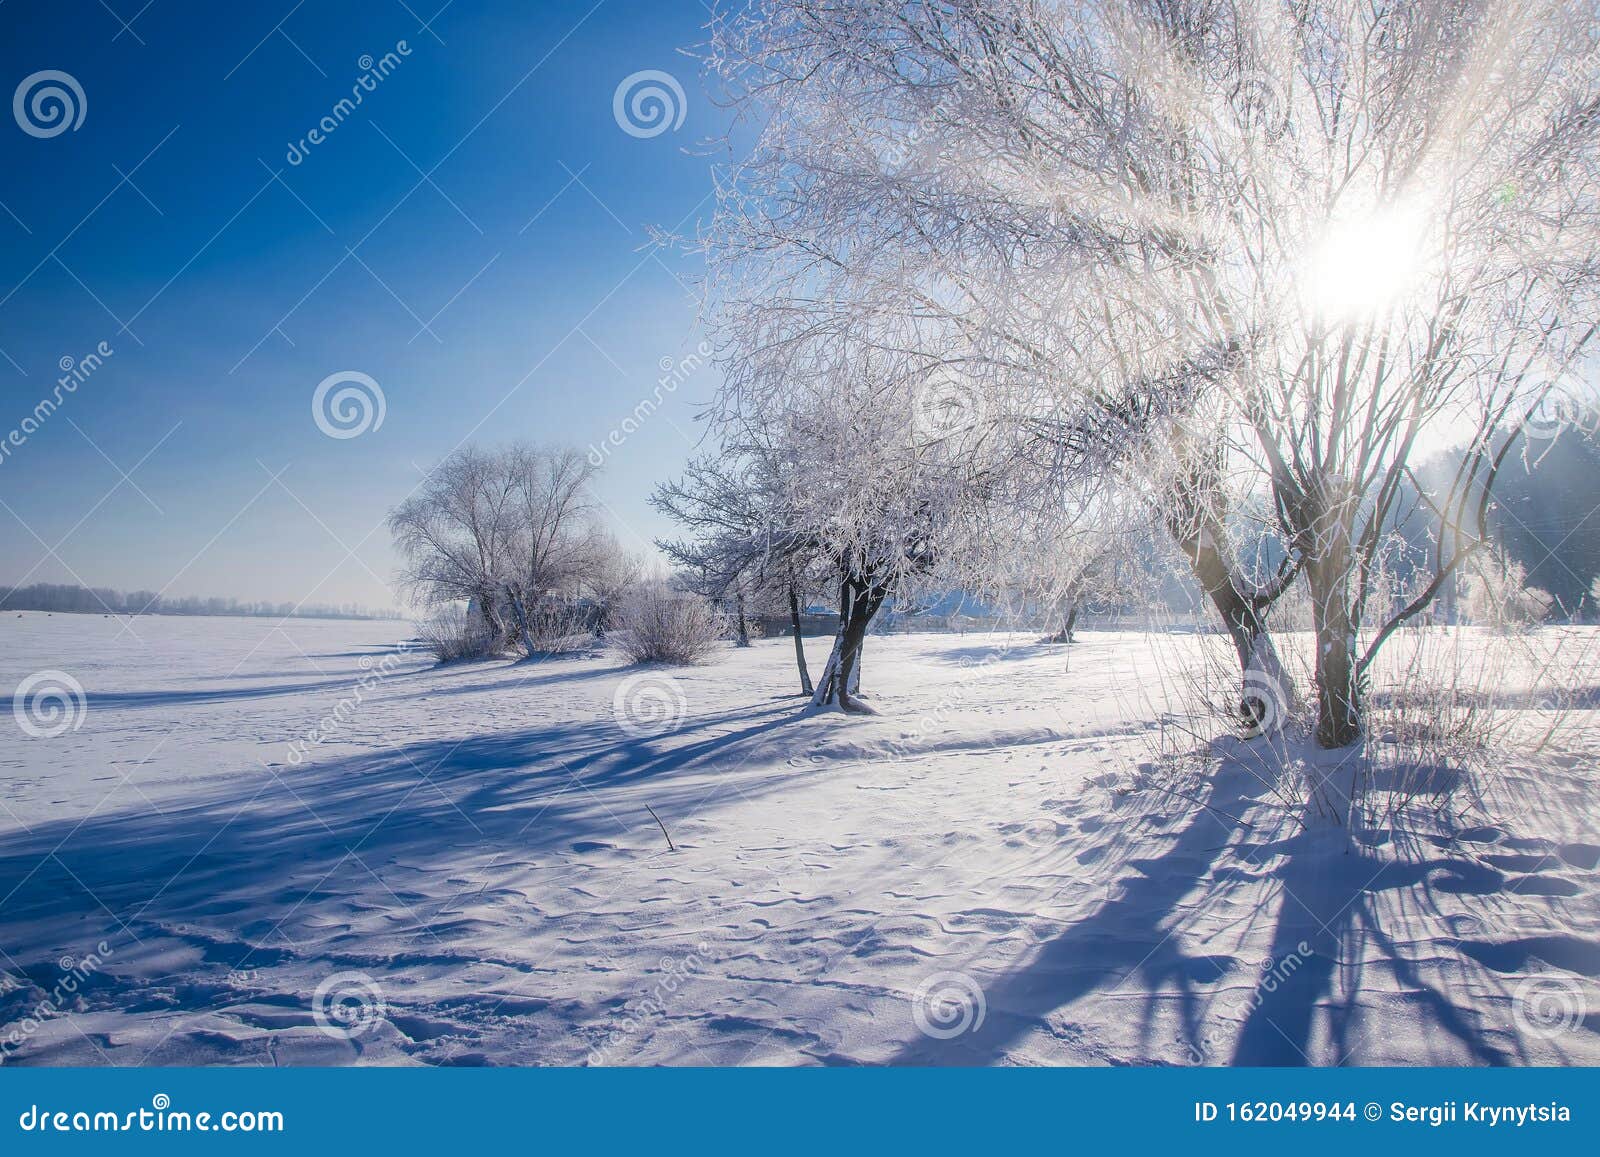 frontscheibe mit wärmedecke und ein bisschen schnee - ein lizenzfreies  Stock Foto von Photocase